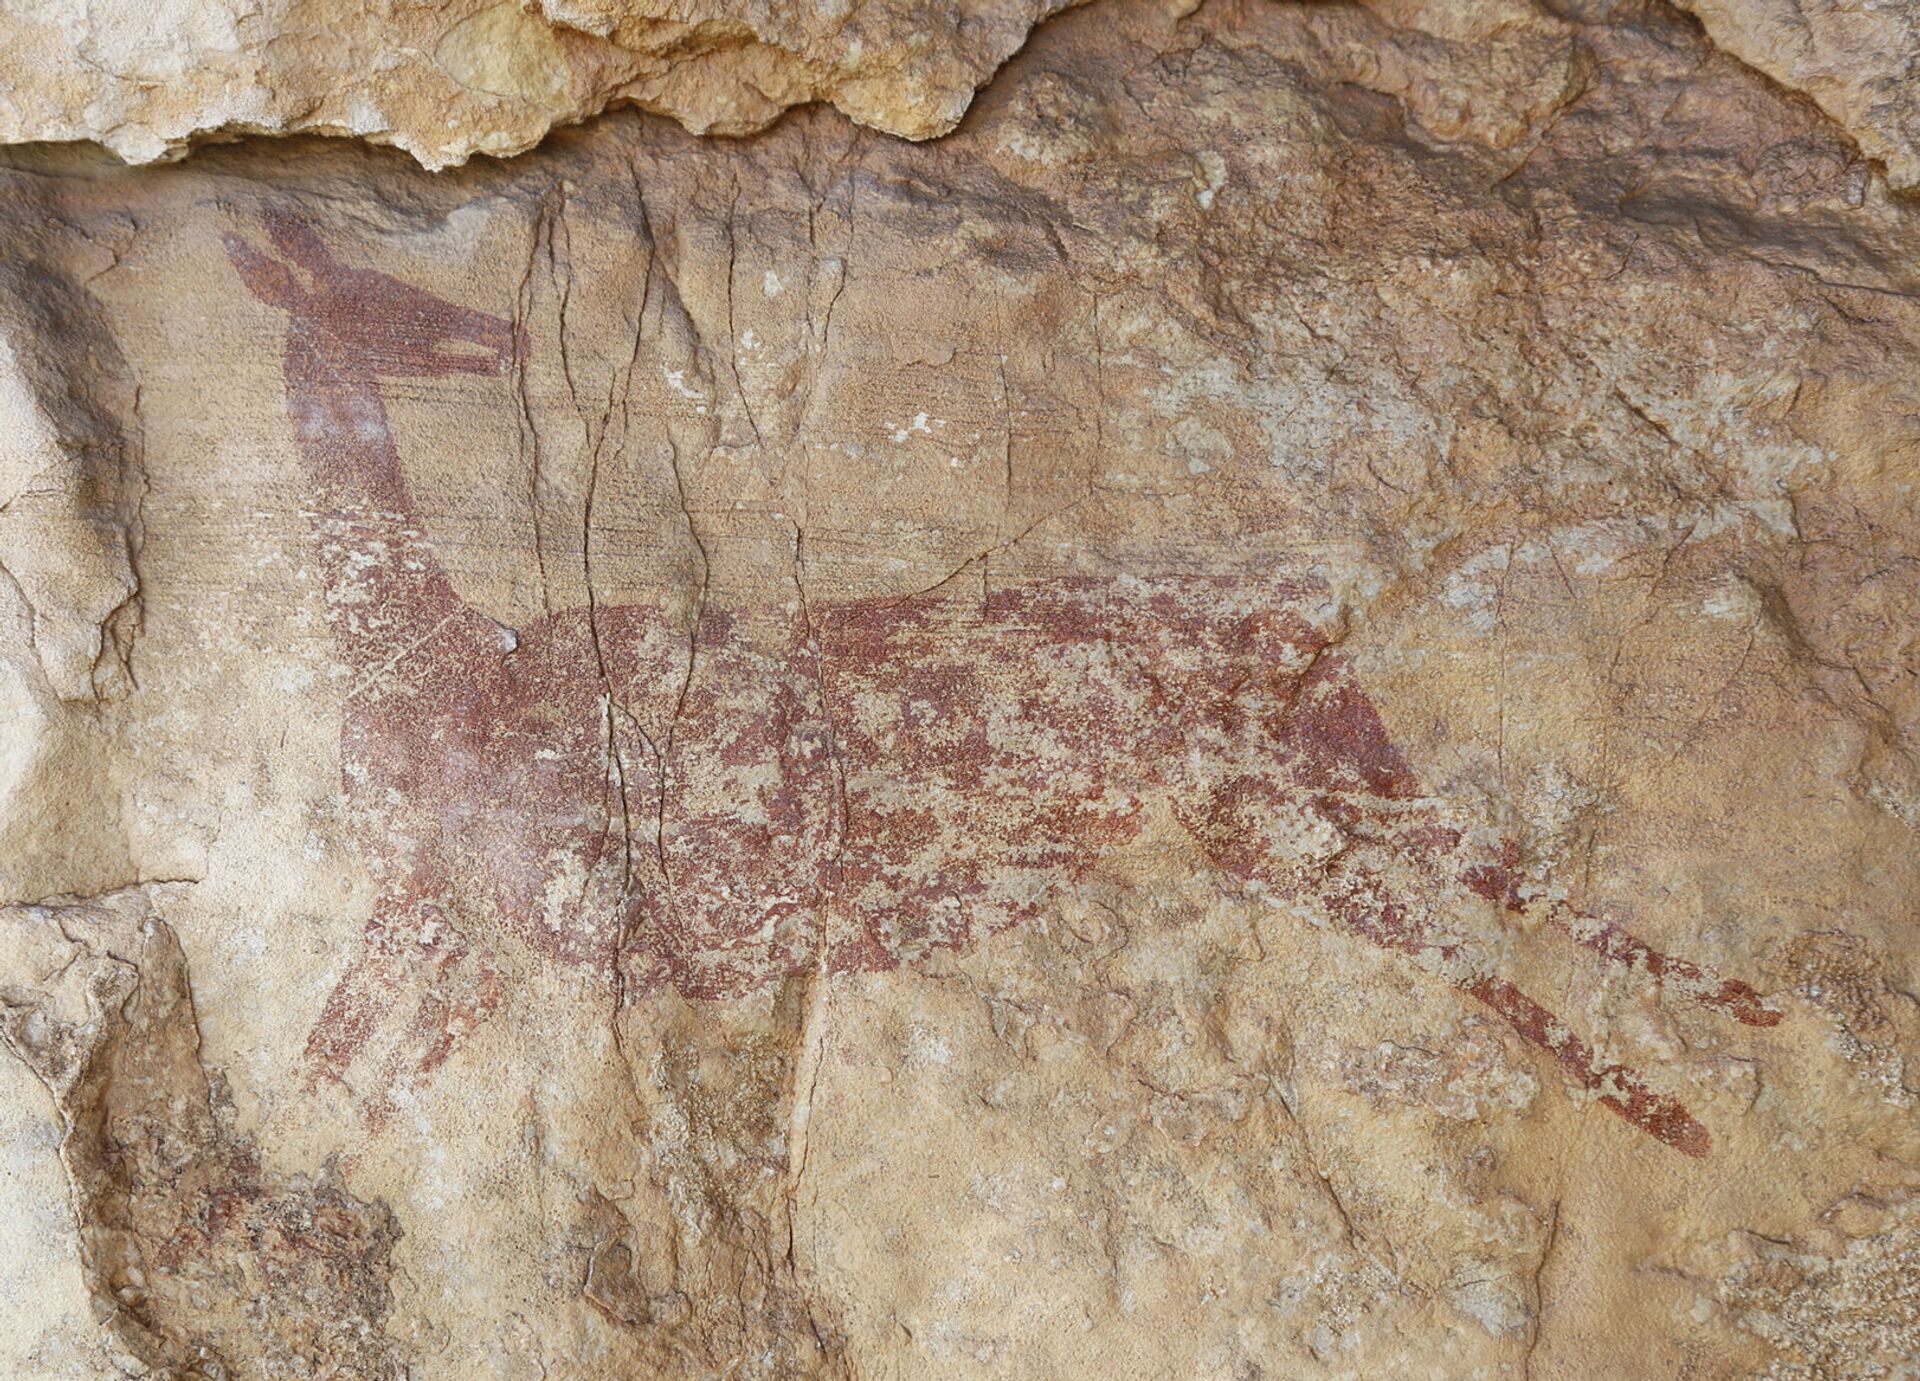 Arte rupestre de 7.500 anos encontrada na Espanha mostra homem coletando mel (FOTOS) - Sputnik Brasil, 1920, 20.07.2021